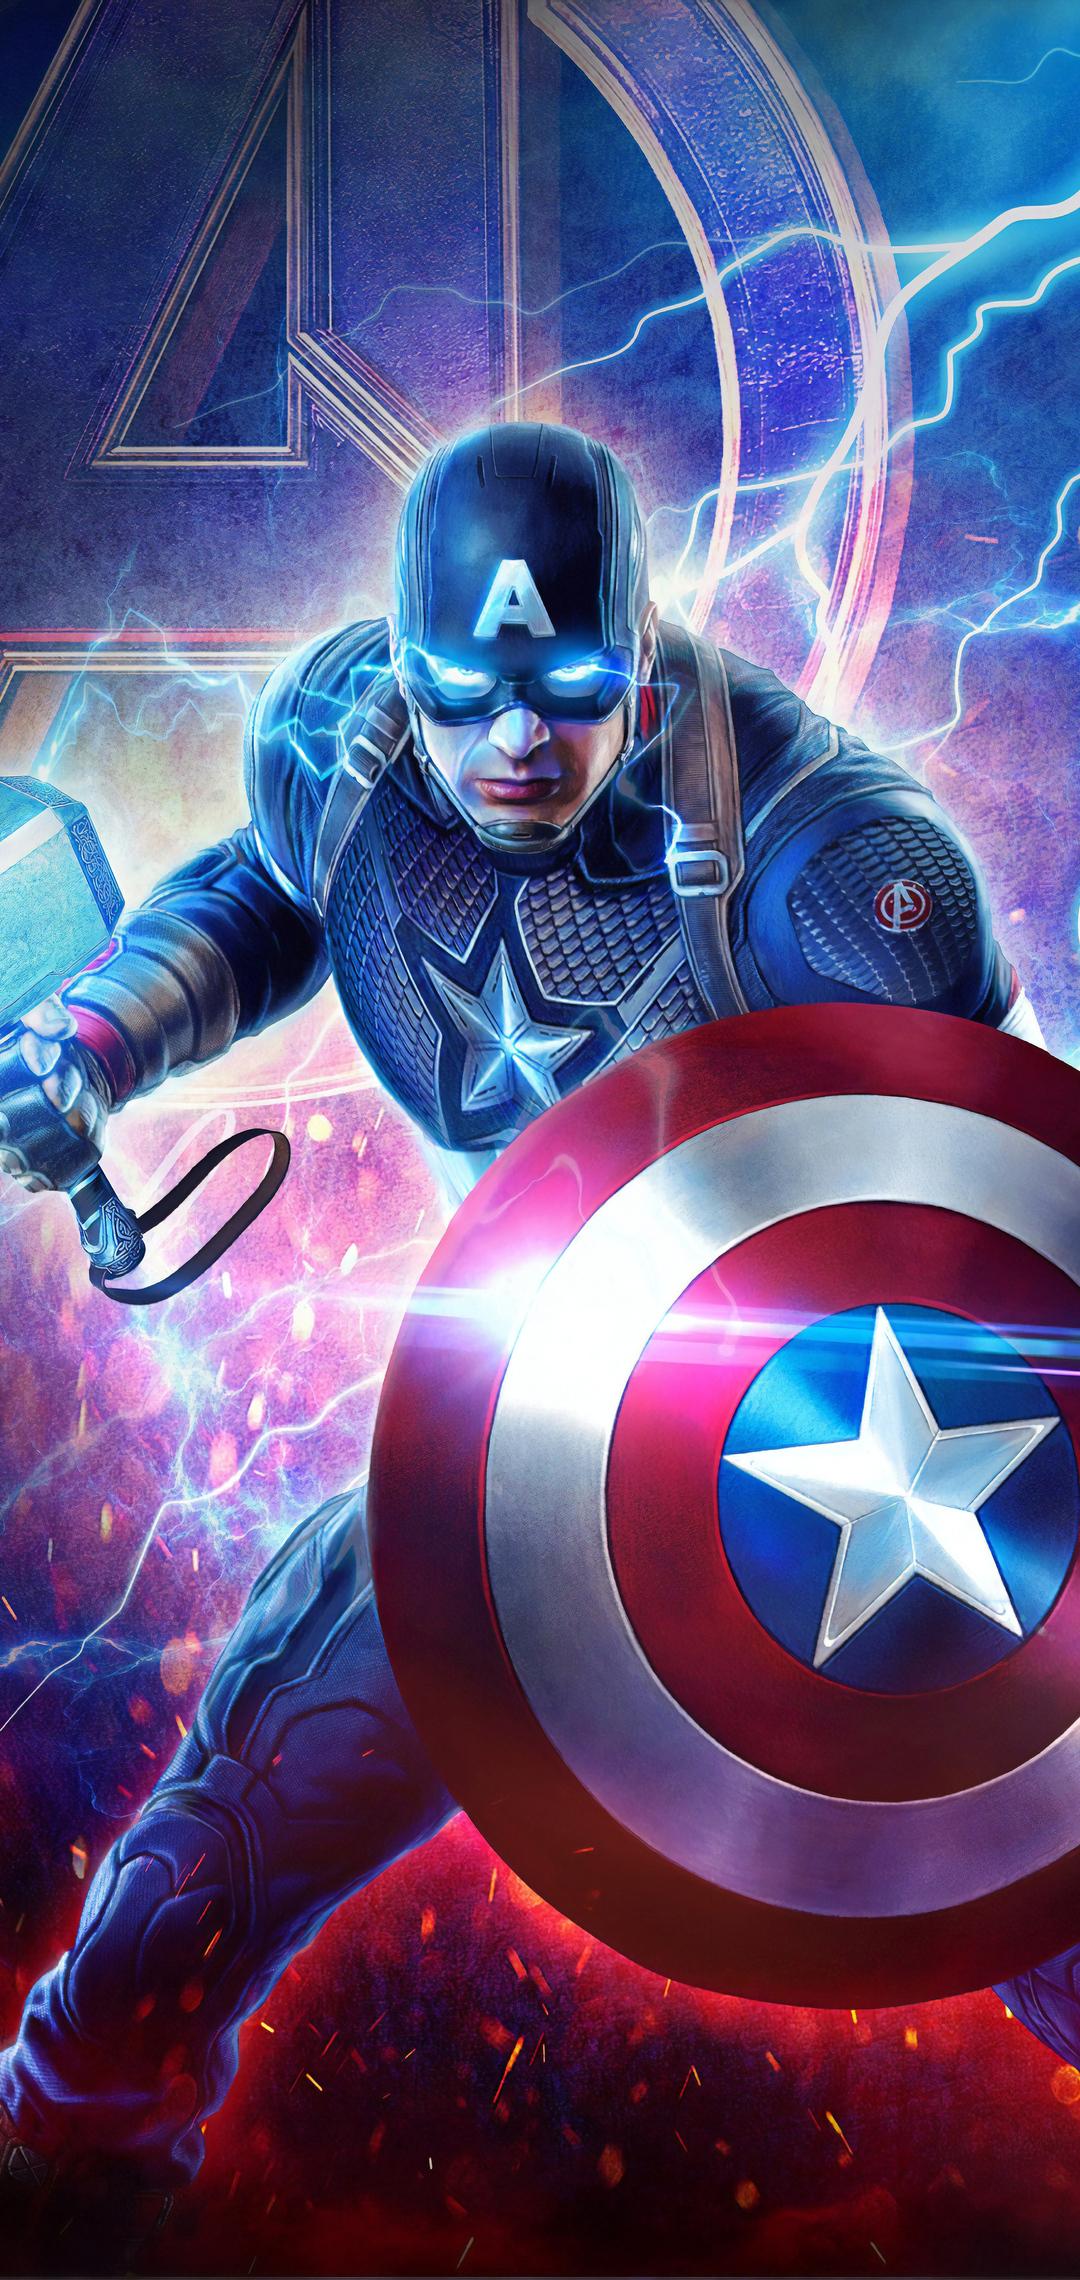 1080 x 2280 · jpeg - 1080x2280 2019 Captain America Mjolnir Avengers Endgame 4k One Plus 6 ...